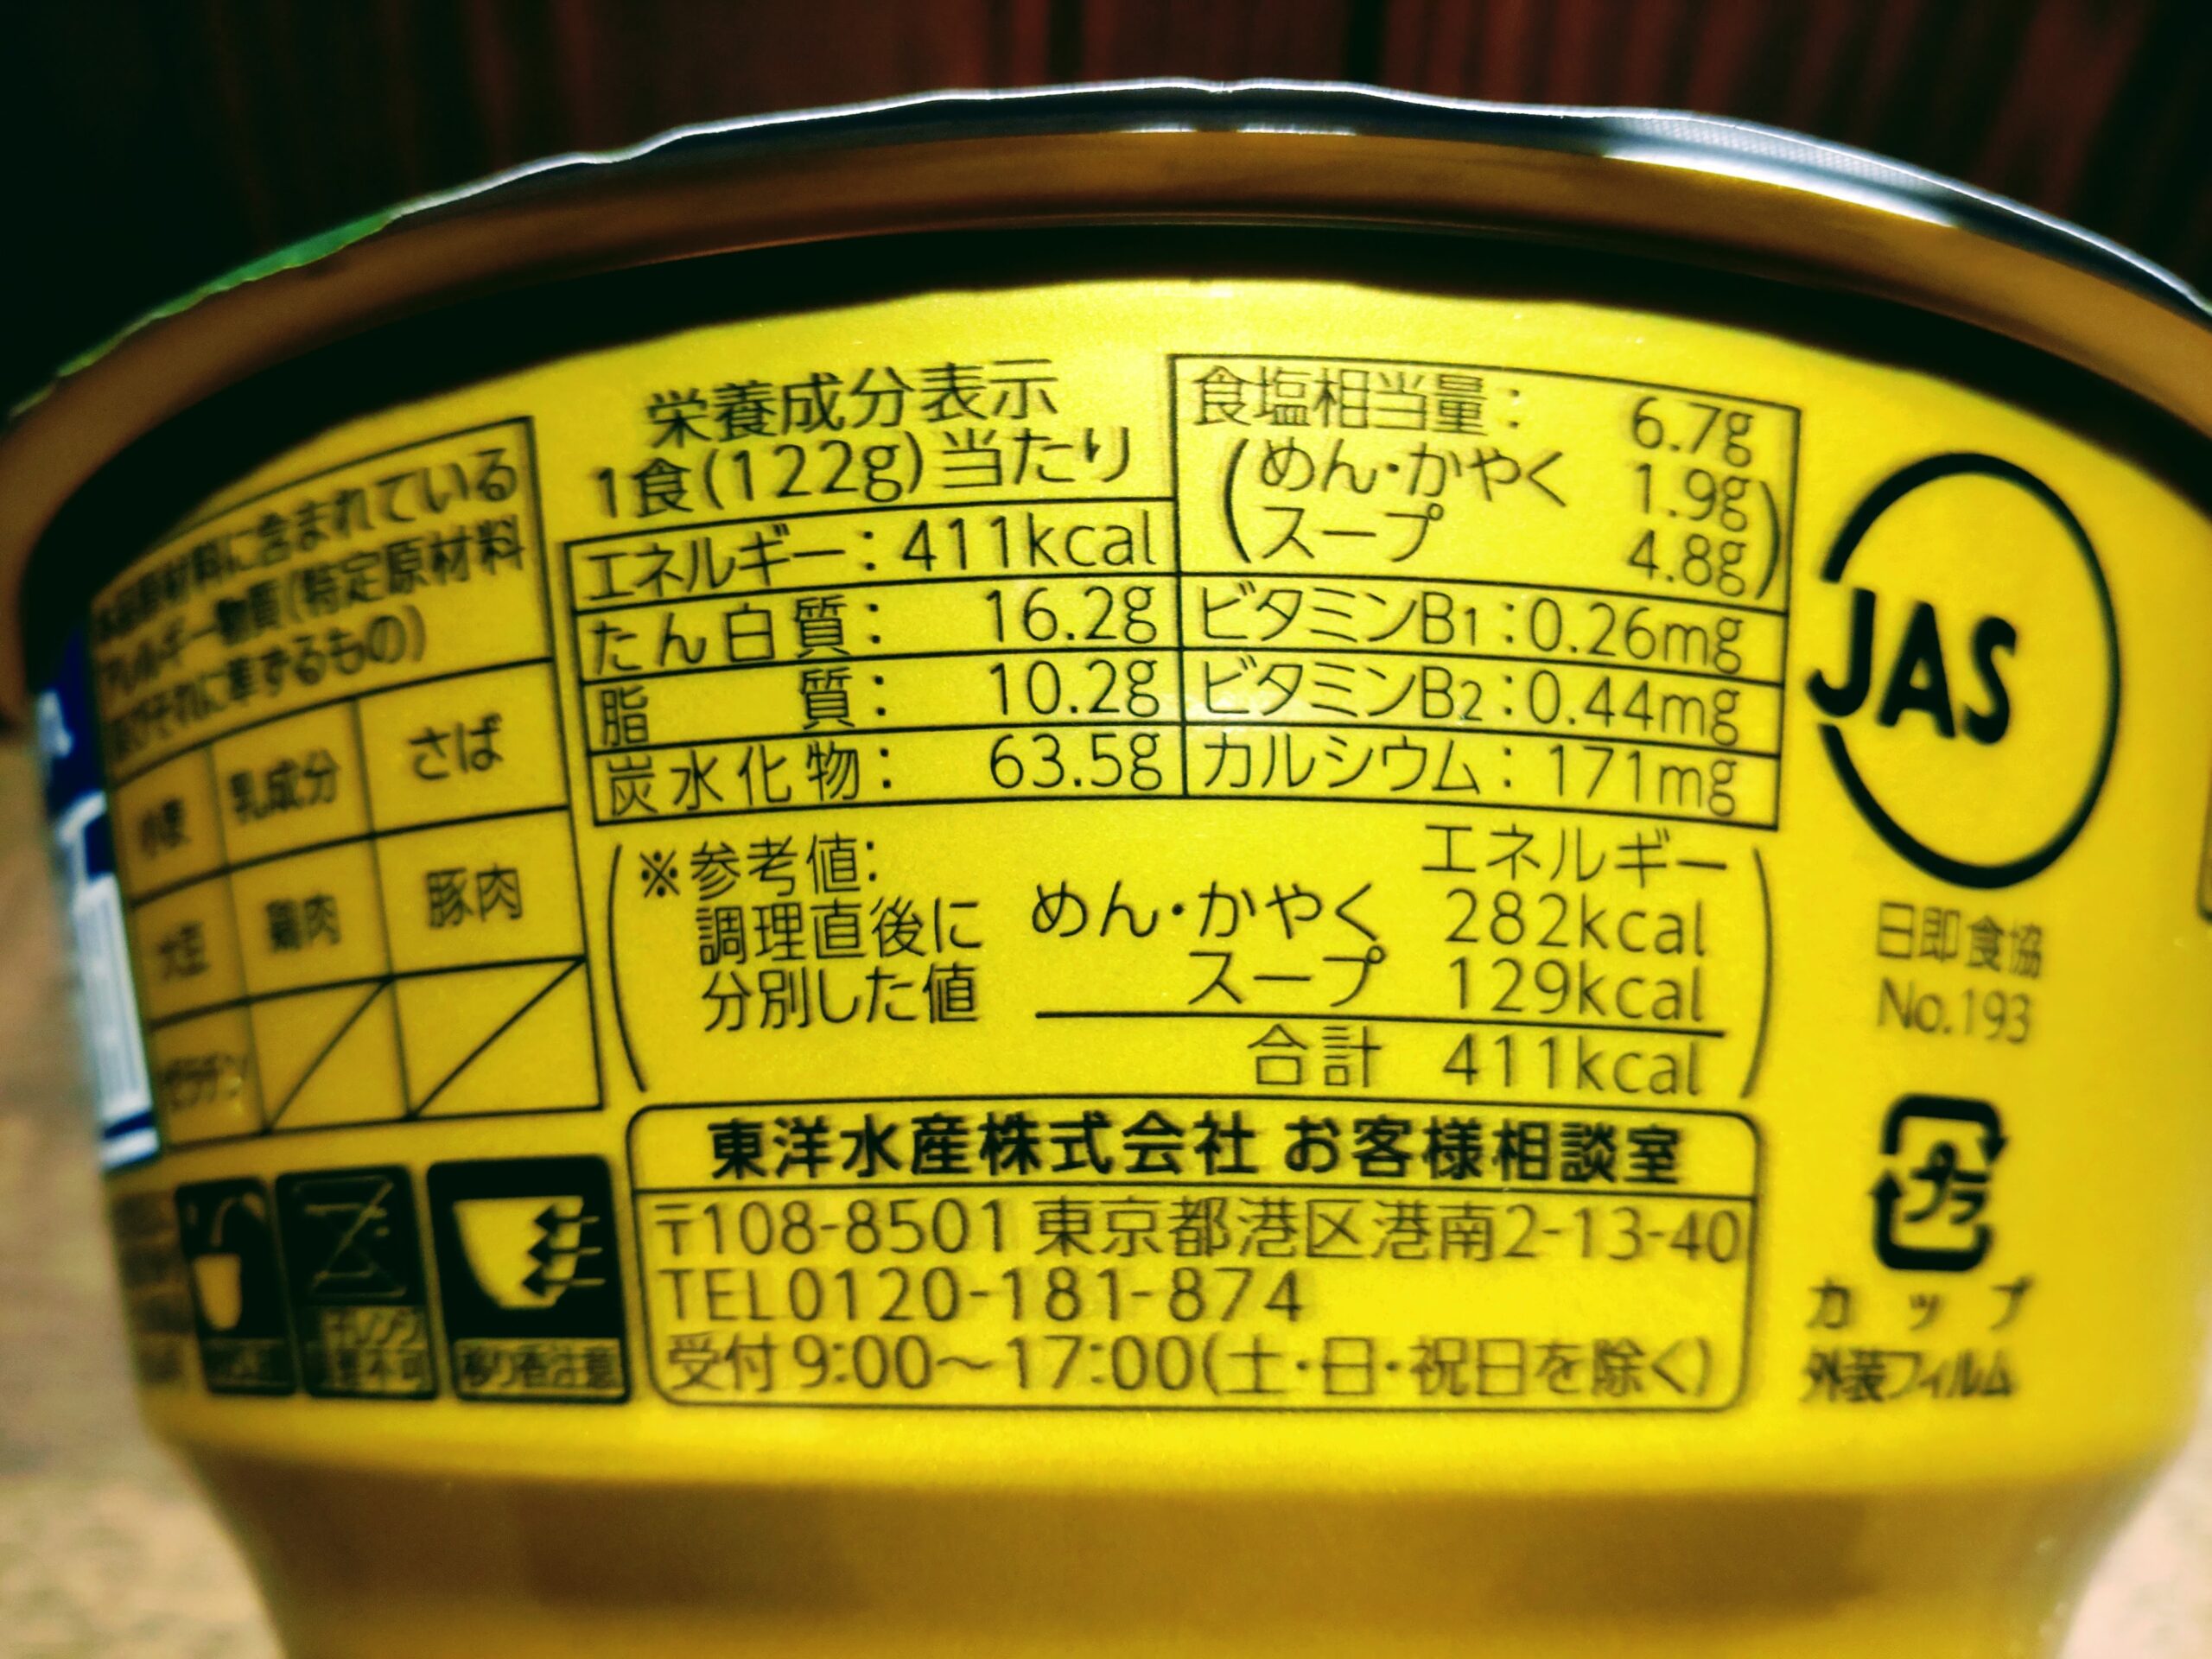 マルちゃん正麺 カップ 極濃魚介豚骨の栄養成分表示